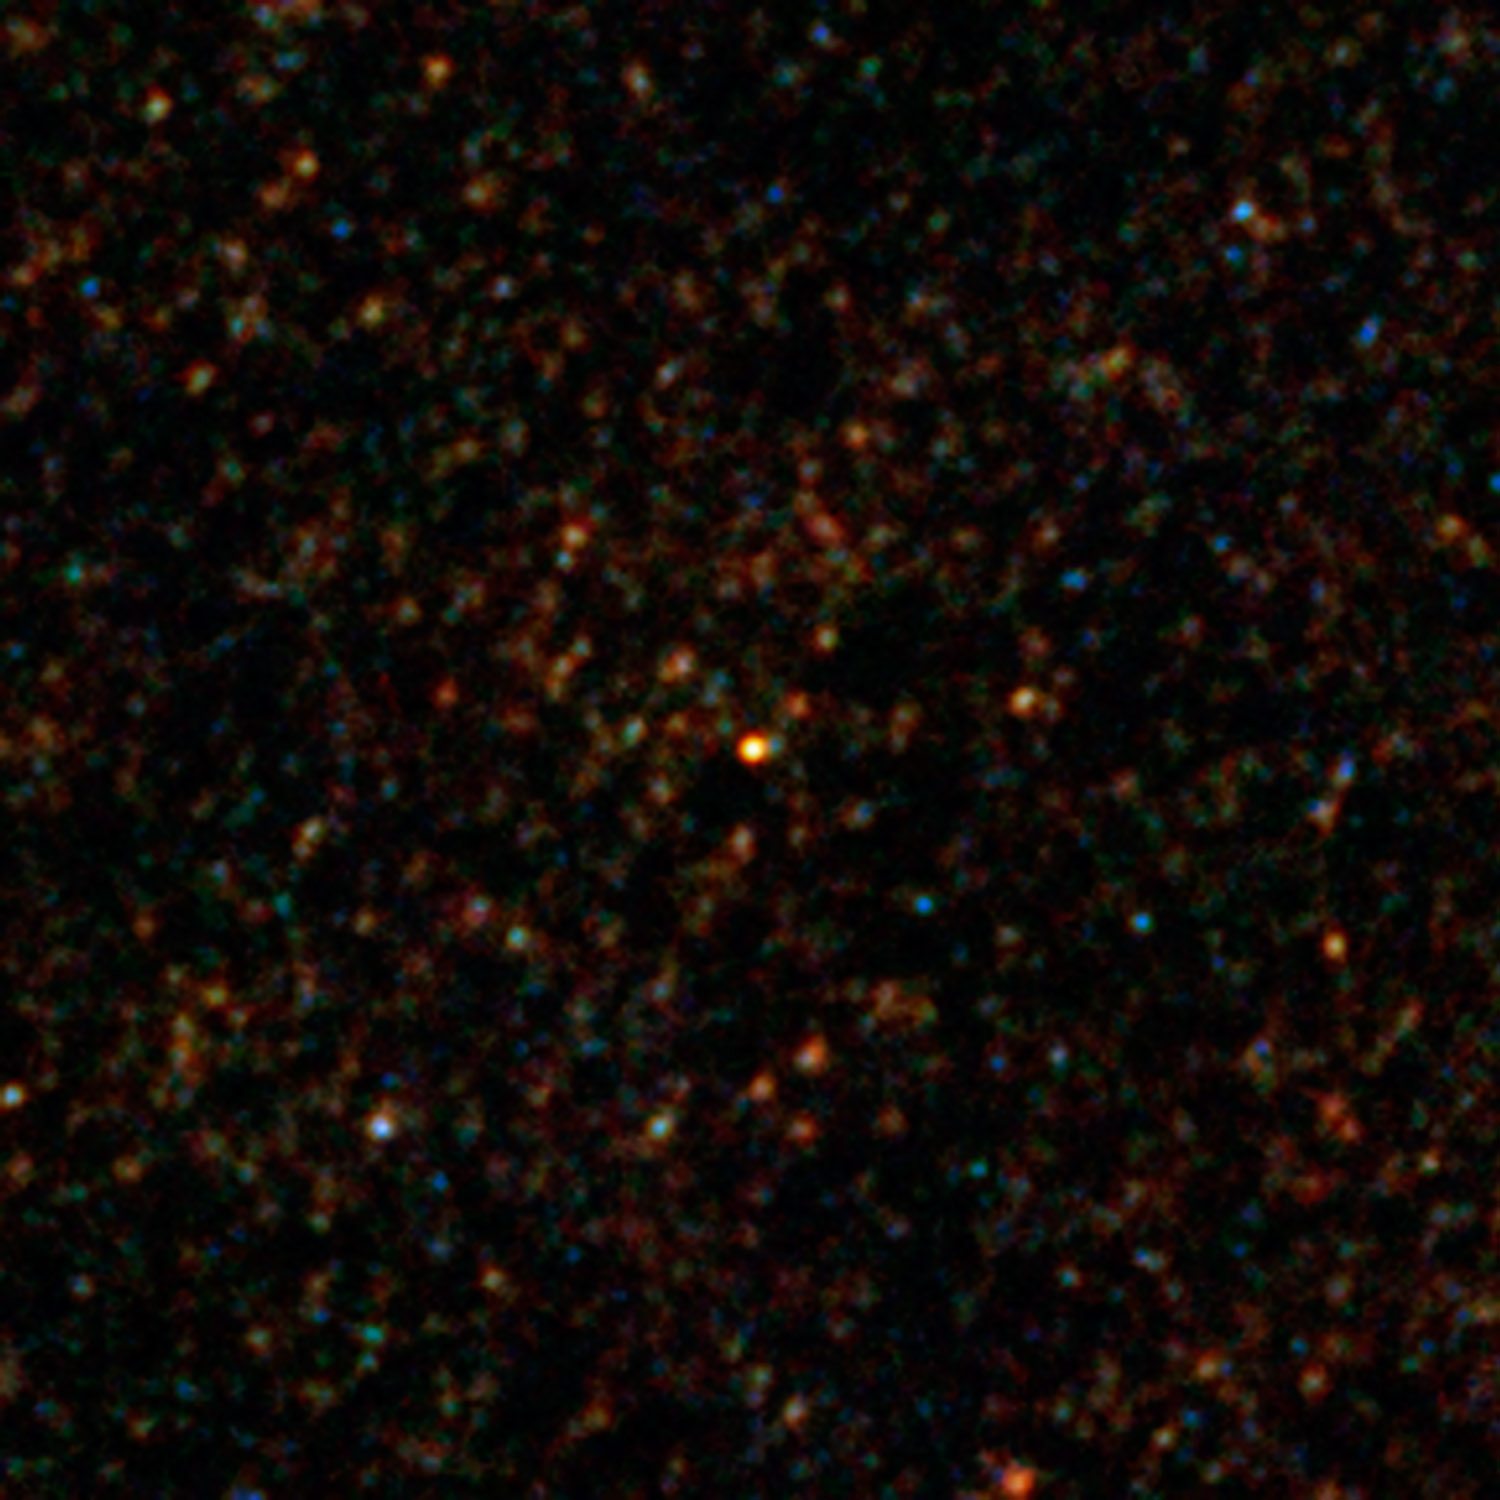 Herschel's view of the bright source HXMM01. Credit: ESA/NASA/JPL-Caltech/UC Irvine